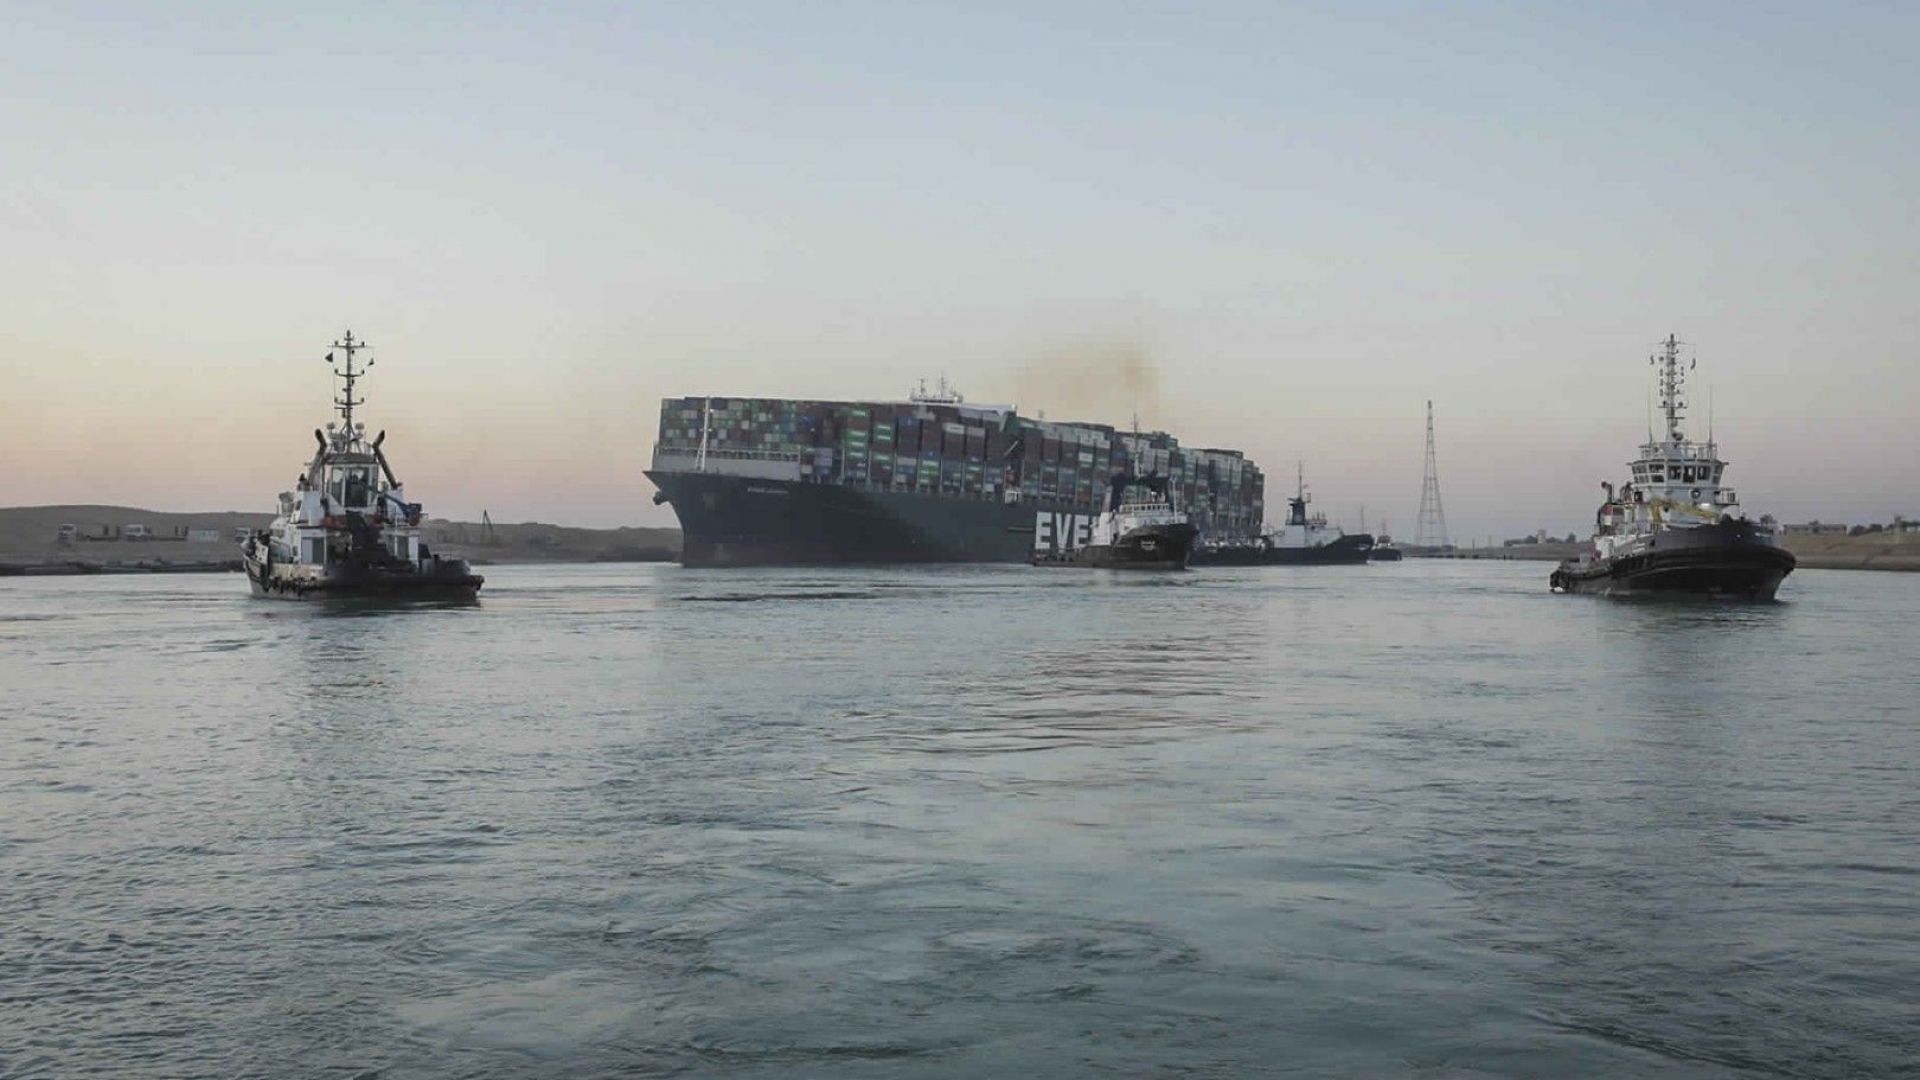 След договорени компенсации: Освобождават кораба, блокирал Суецкия канал през март